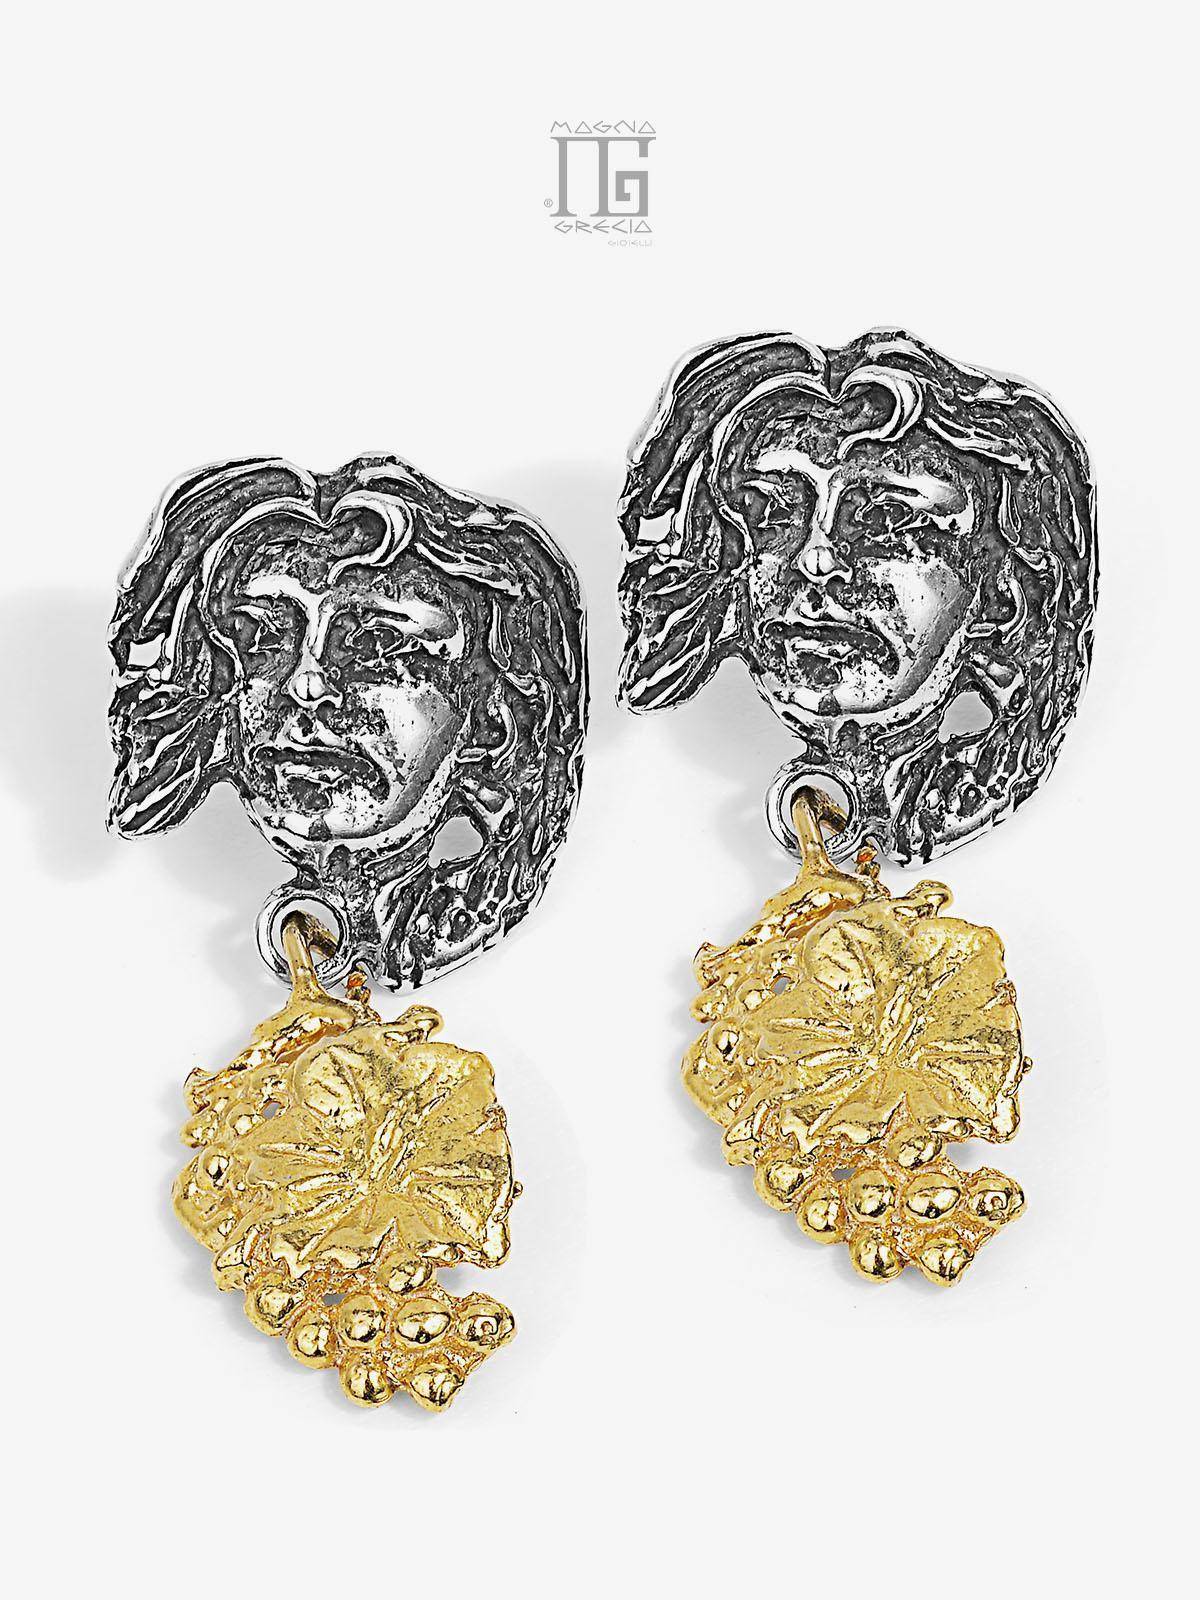 Pendientes colgantes “Otoñal” en plata que representan el rostro de la diosa Venus y un racimo de uvas Cod. MGK 3718 V-3.